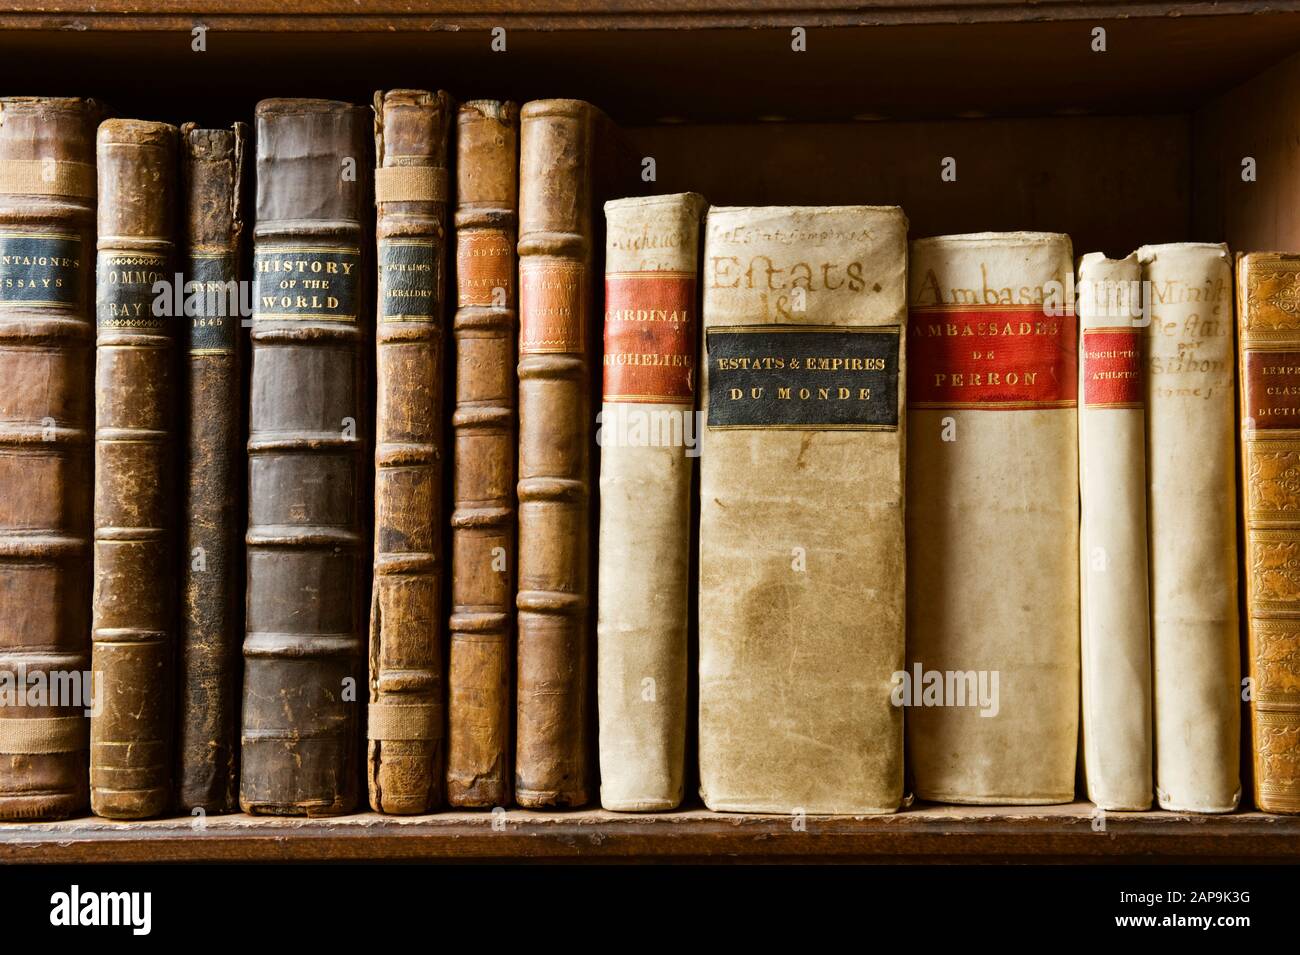 Livres sur les étagères de la Bibliothèque, reflétant les intérêts de plusieurs générations de la famille Bankes, à Kingston Lacy, Dorset. Banque D'Images